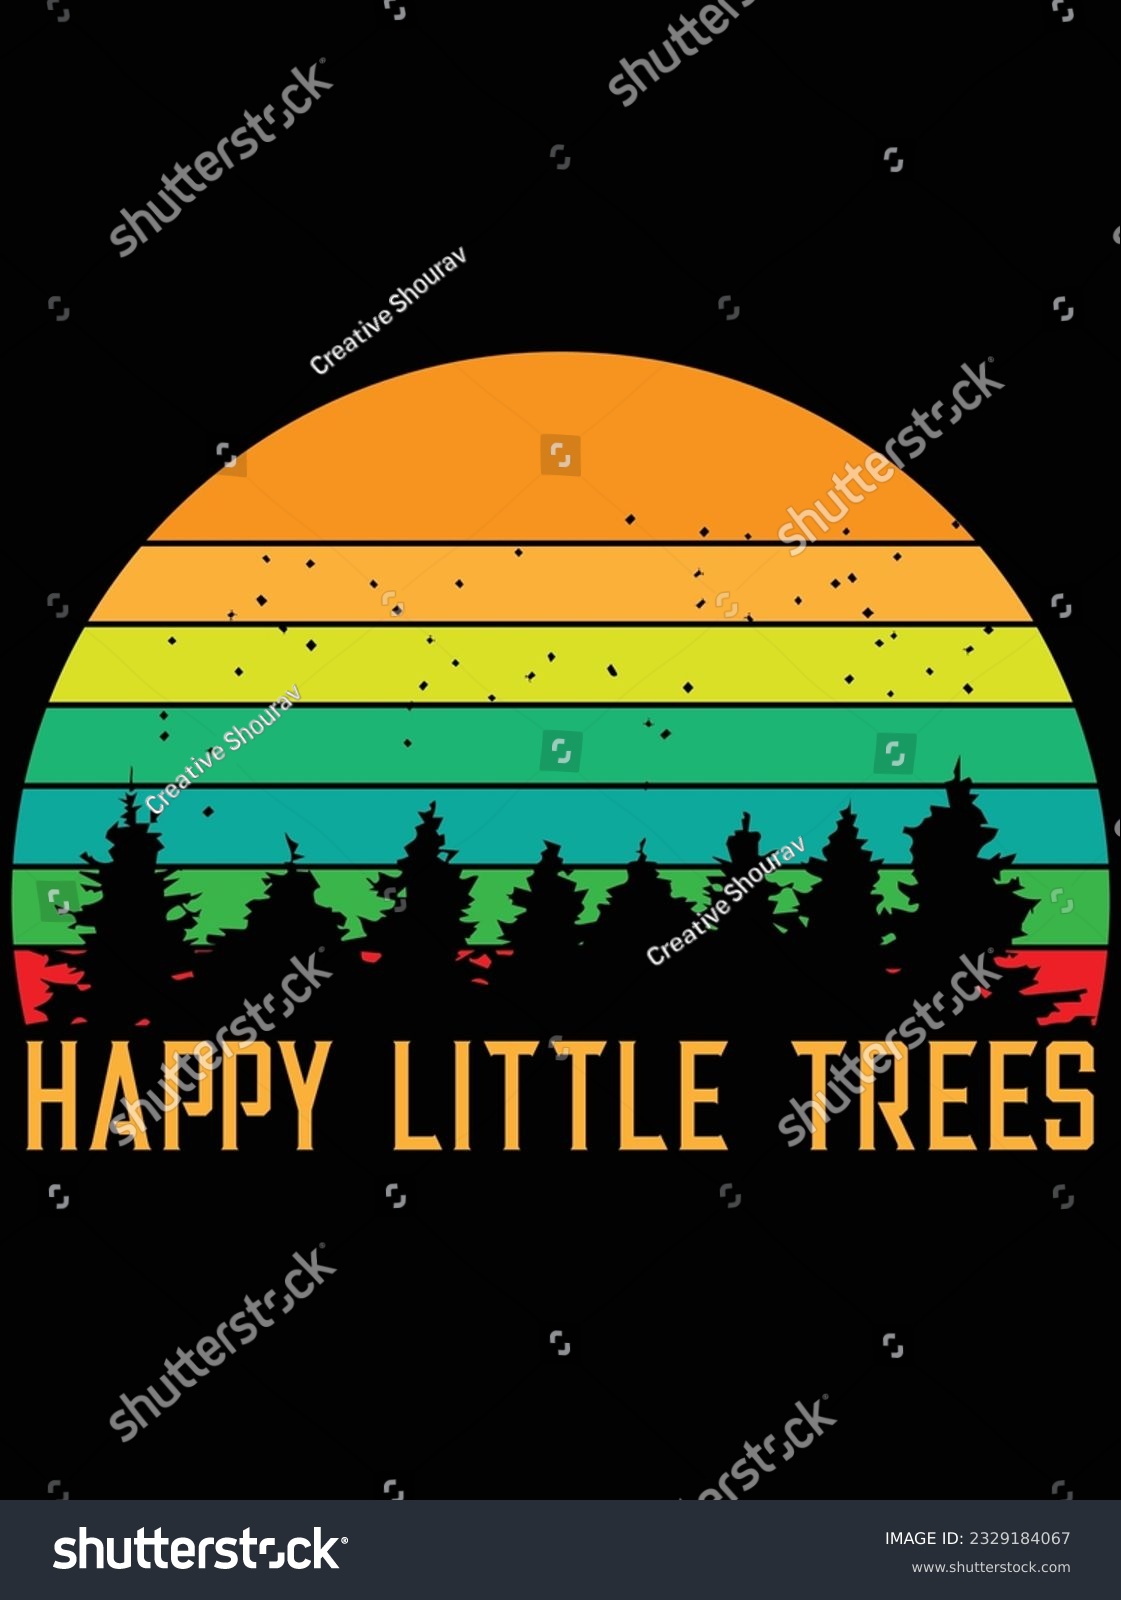 SVG of Happy little trees vector art design, eps file. design file for t-shirt. SVG, EPS cuttable design file svg